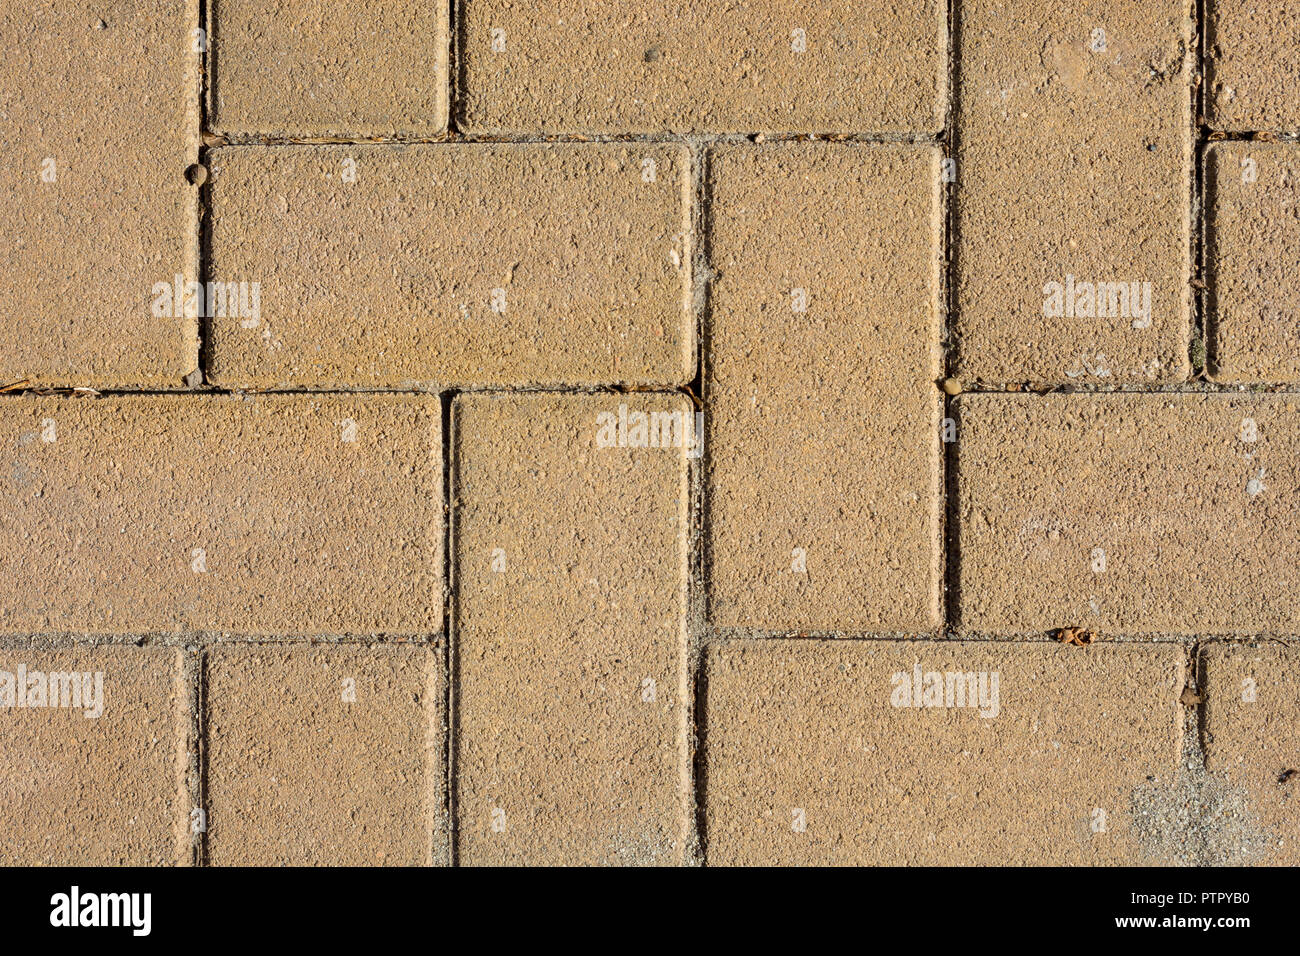 Ladrillos color arena el pavimento de piedra en el suelo de la calle. Acera, Calzada, pavimento de adoquines, en modelo cuadrado Textura del fondo. Foto de stock